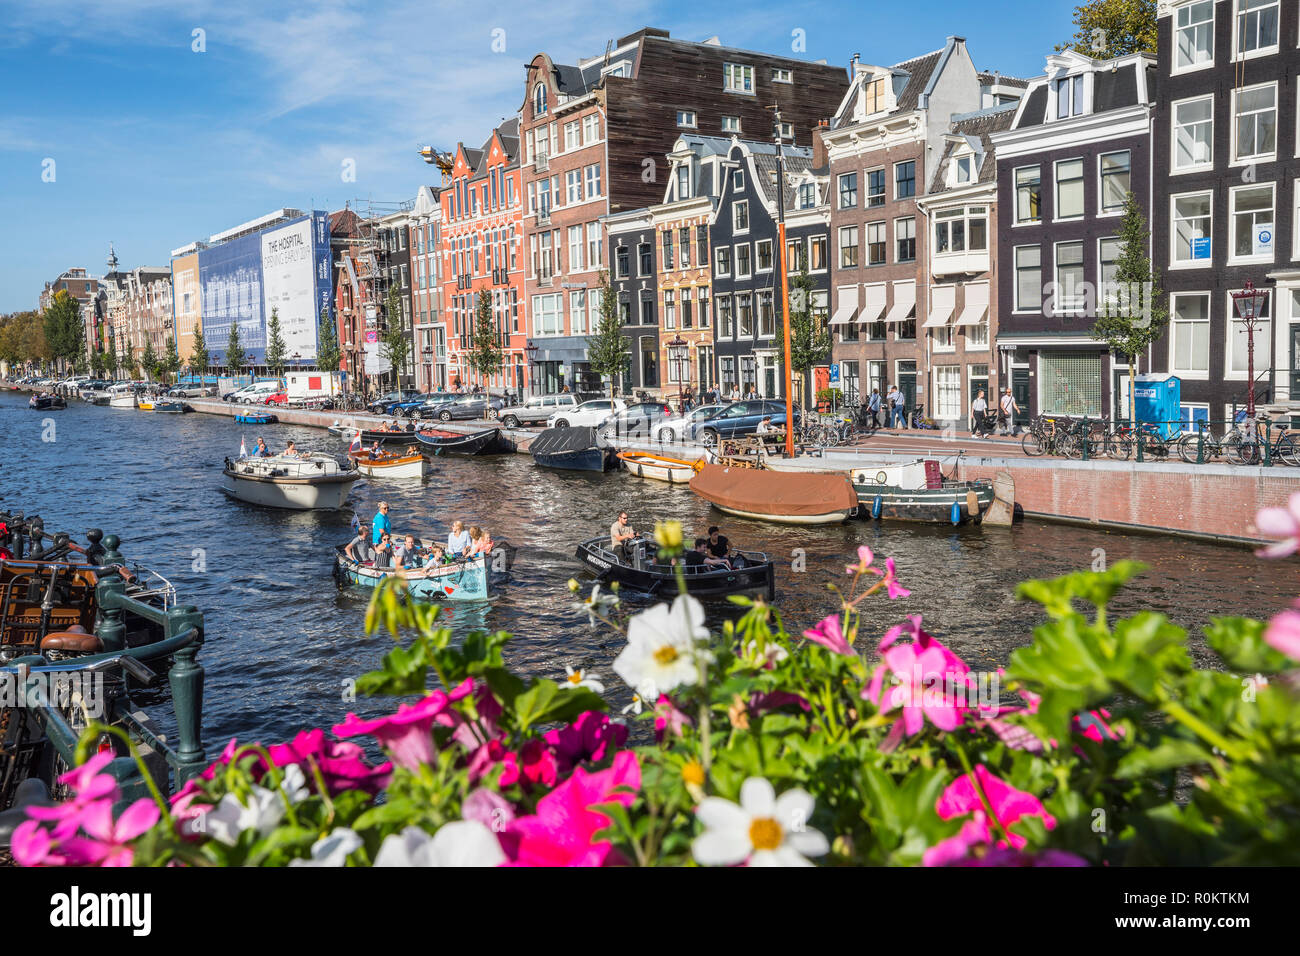 Vista sul canale di Amsterdam con imbarcazioni turistiche oltre i fiori colorati sul ponte Foto Stock